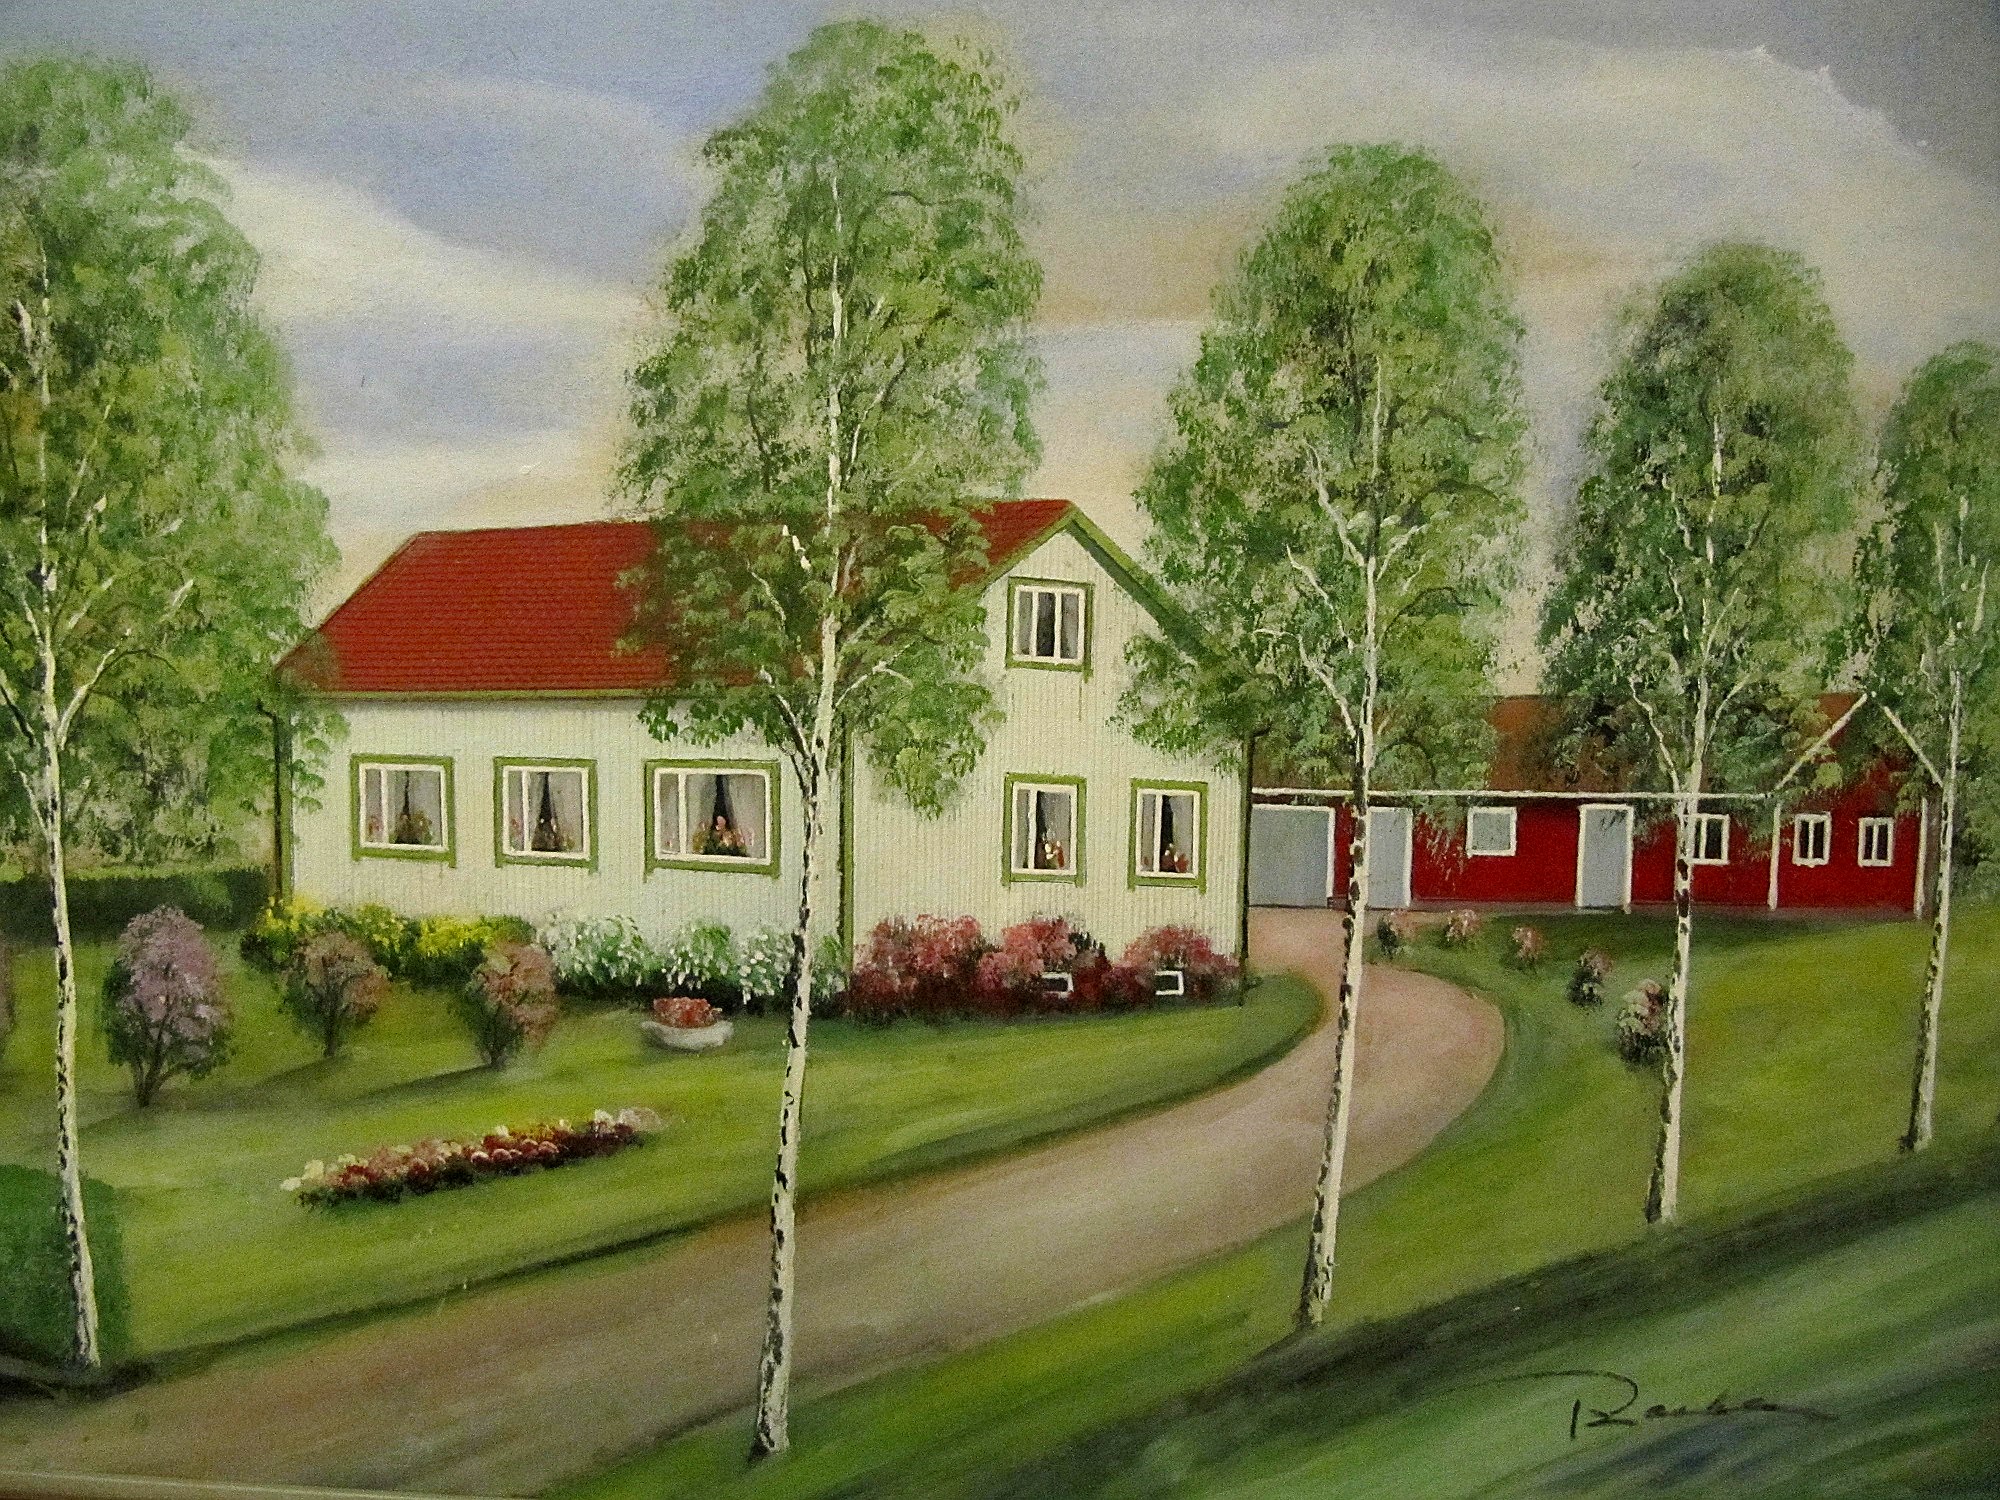 Ethel och Velis gård enligt konstnären Rosblom.